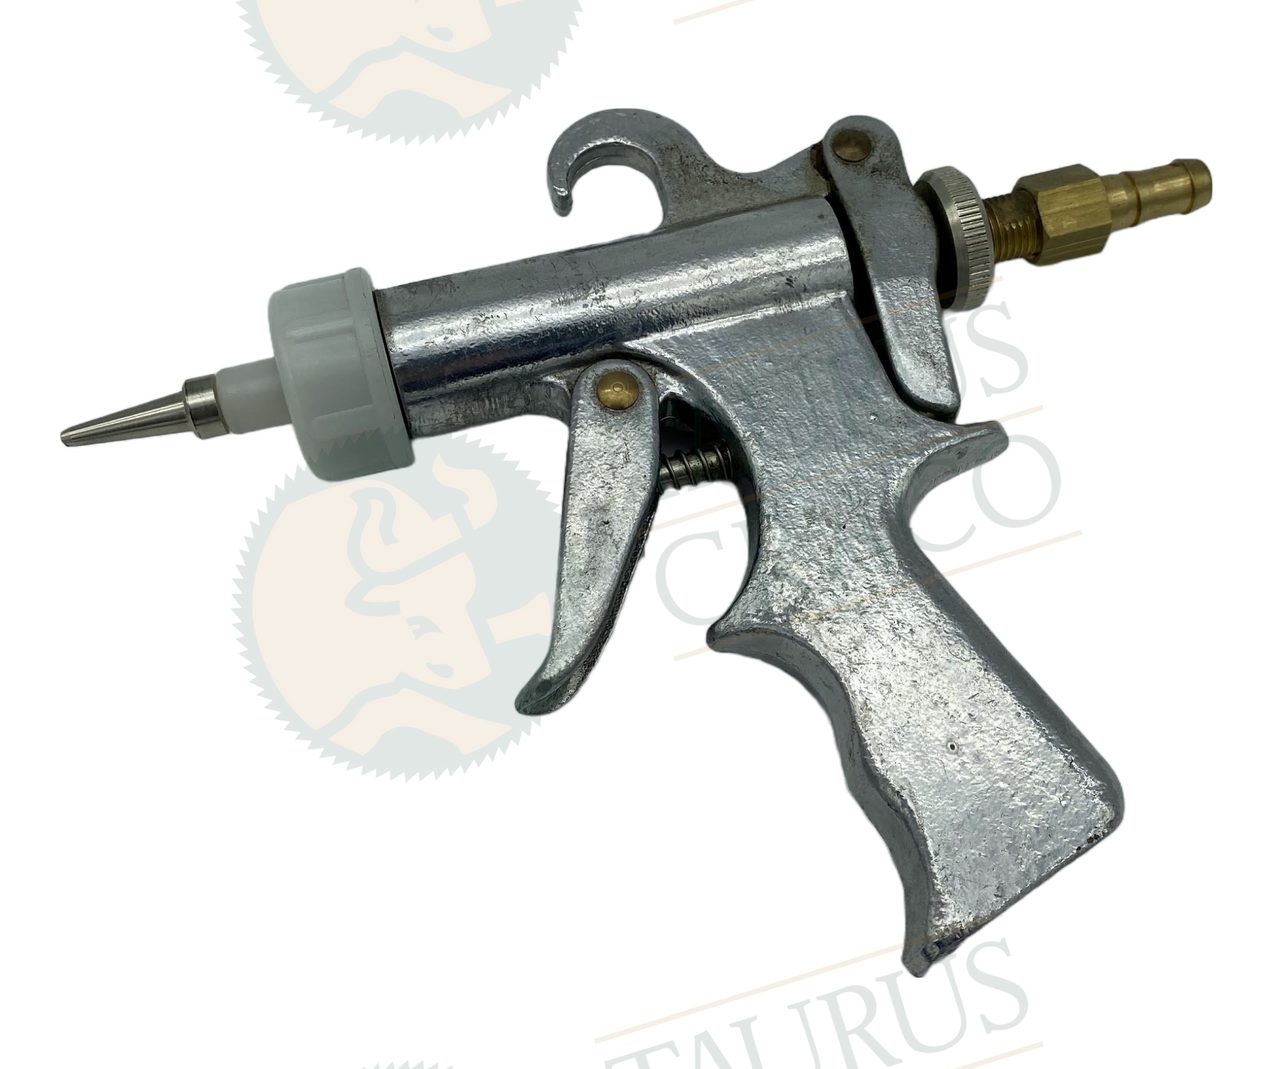 Pizzi Glue Spray Gun with Anatomic Grip